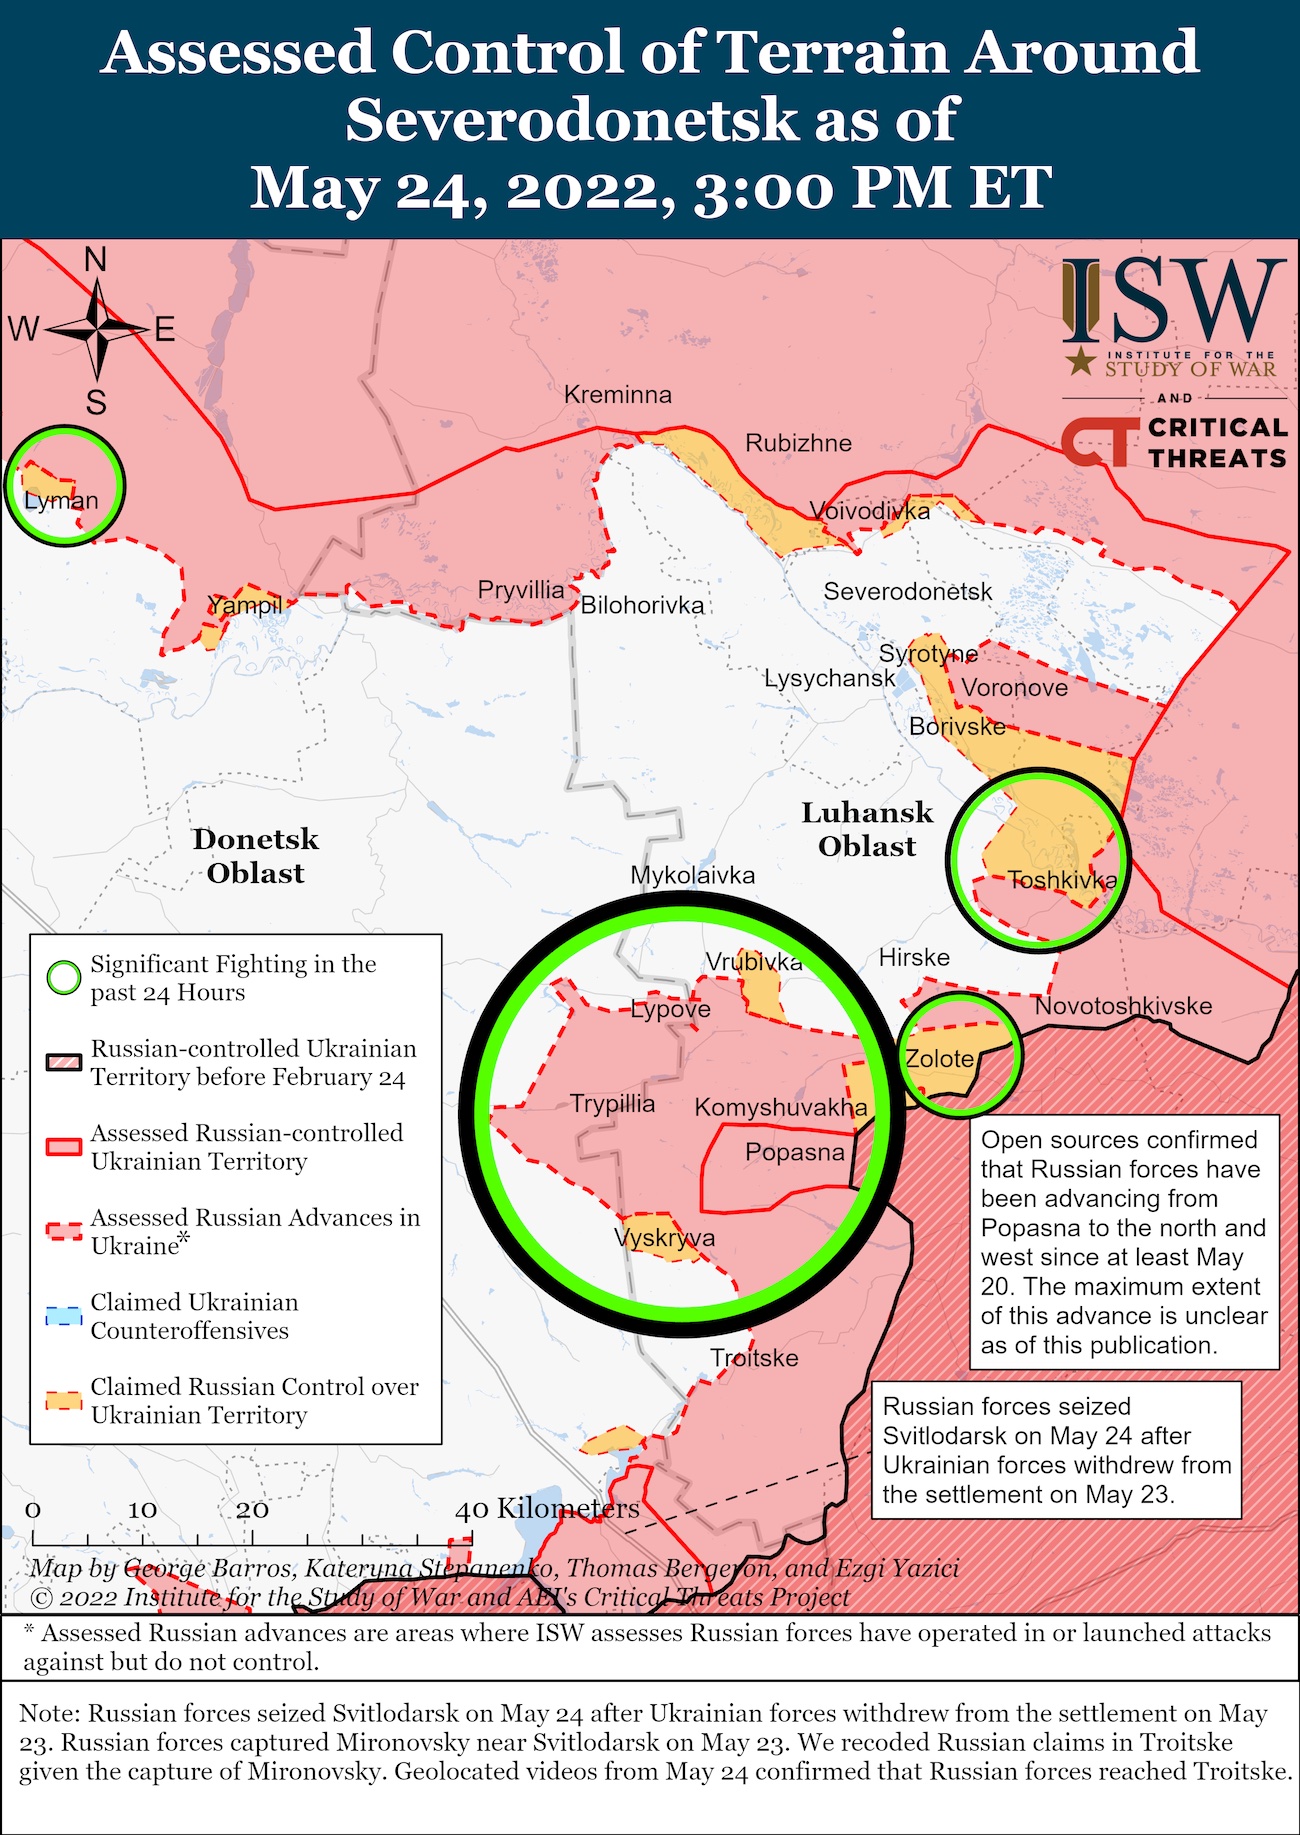 Армия РФ не осилила "большое" окружение на Донбассе, согласна на несколько маленьких – ISW